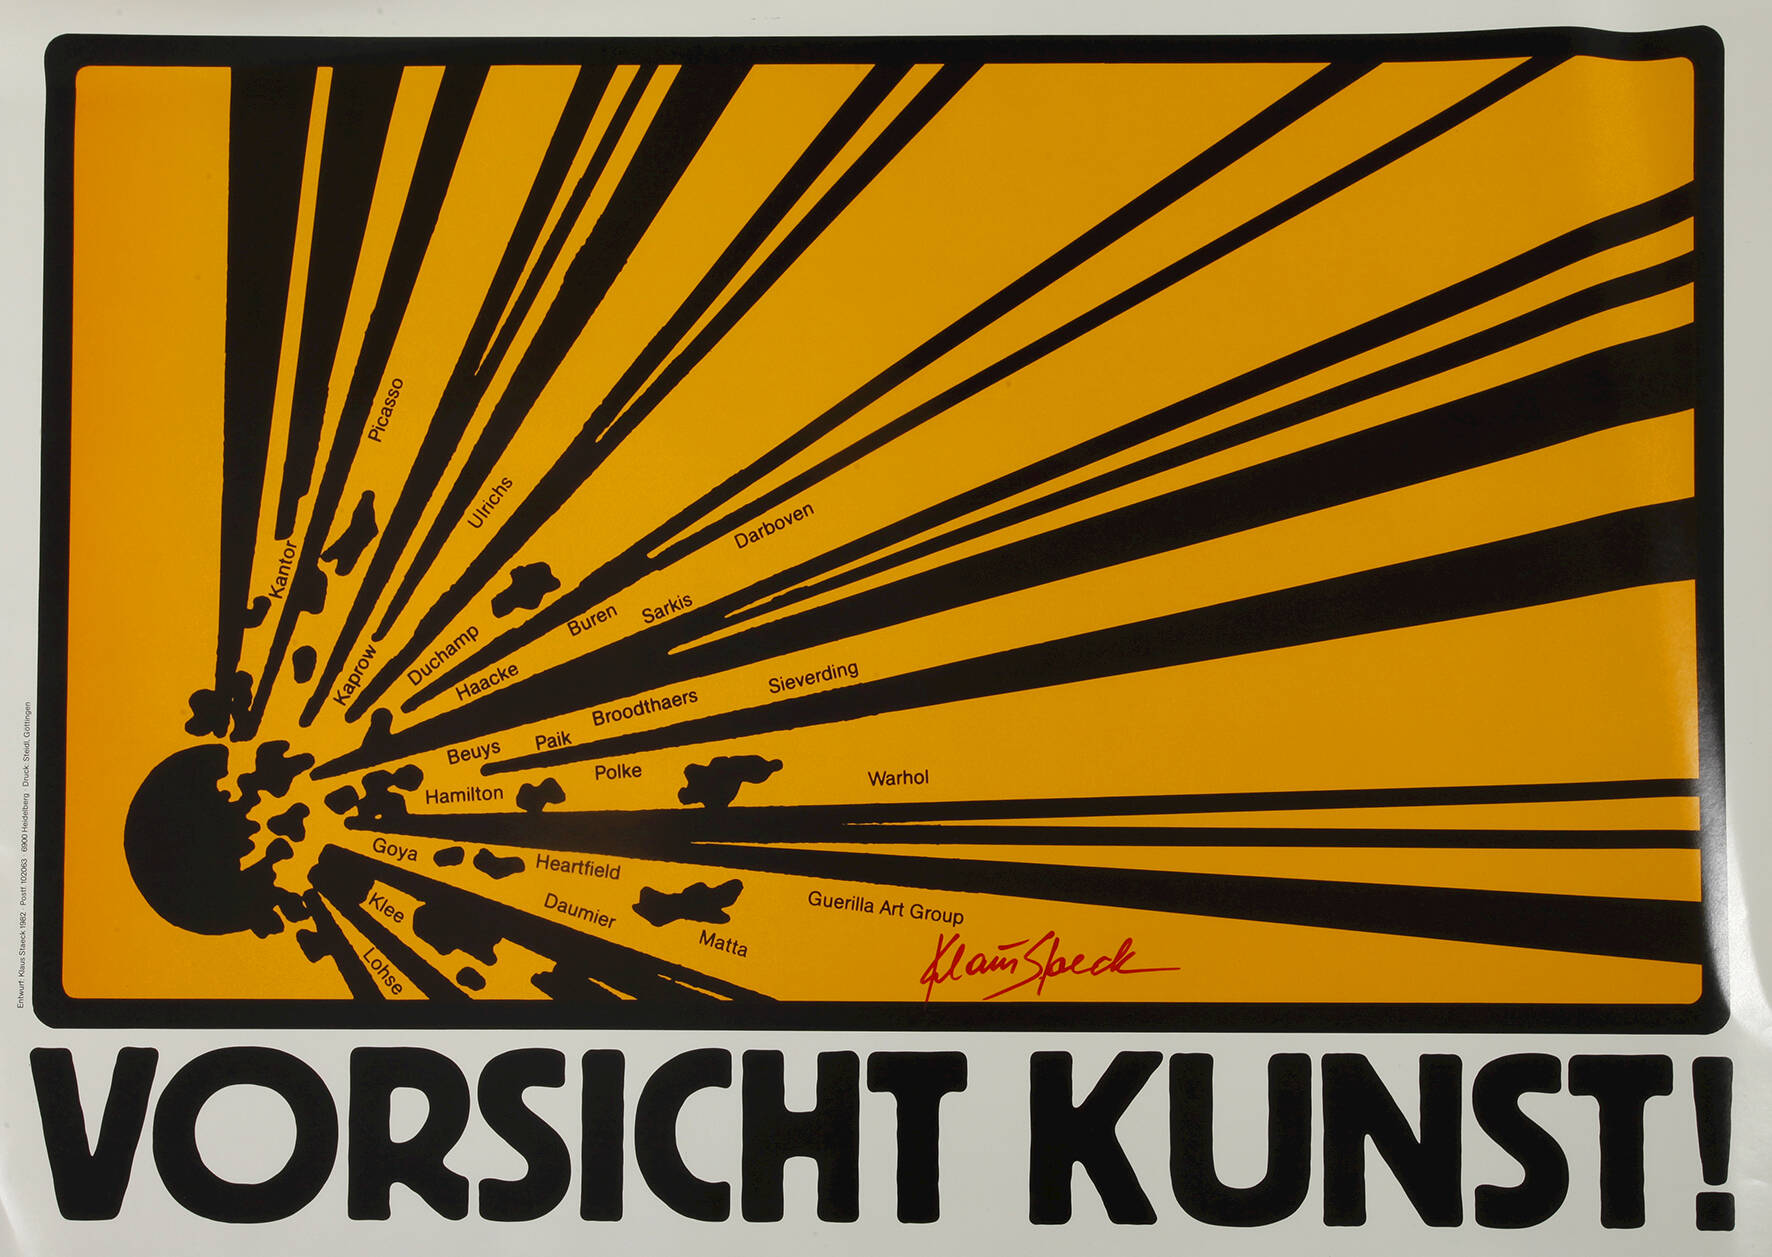 Prof. Klaus Staeck, Plakat "Vorsicht Kunst"